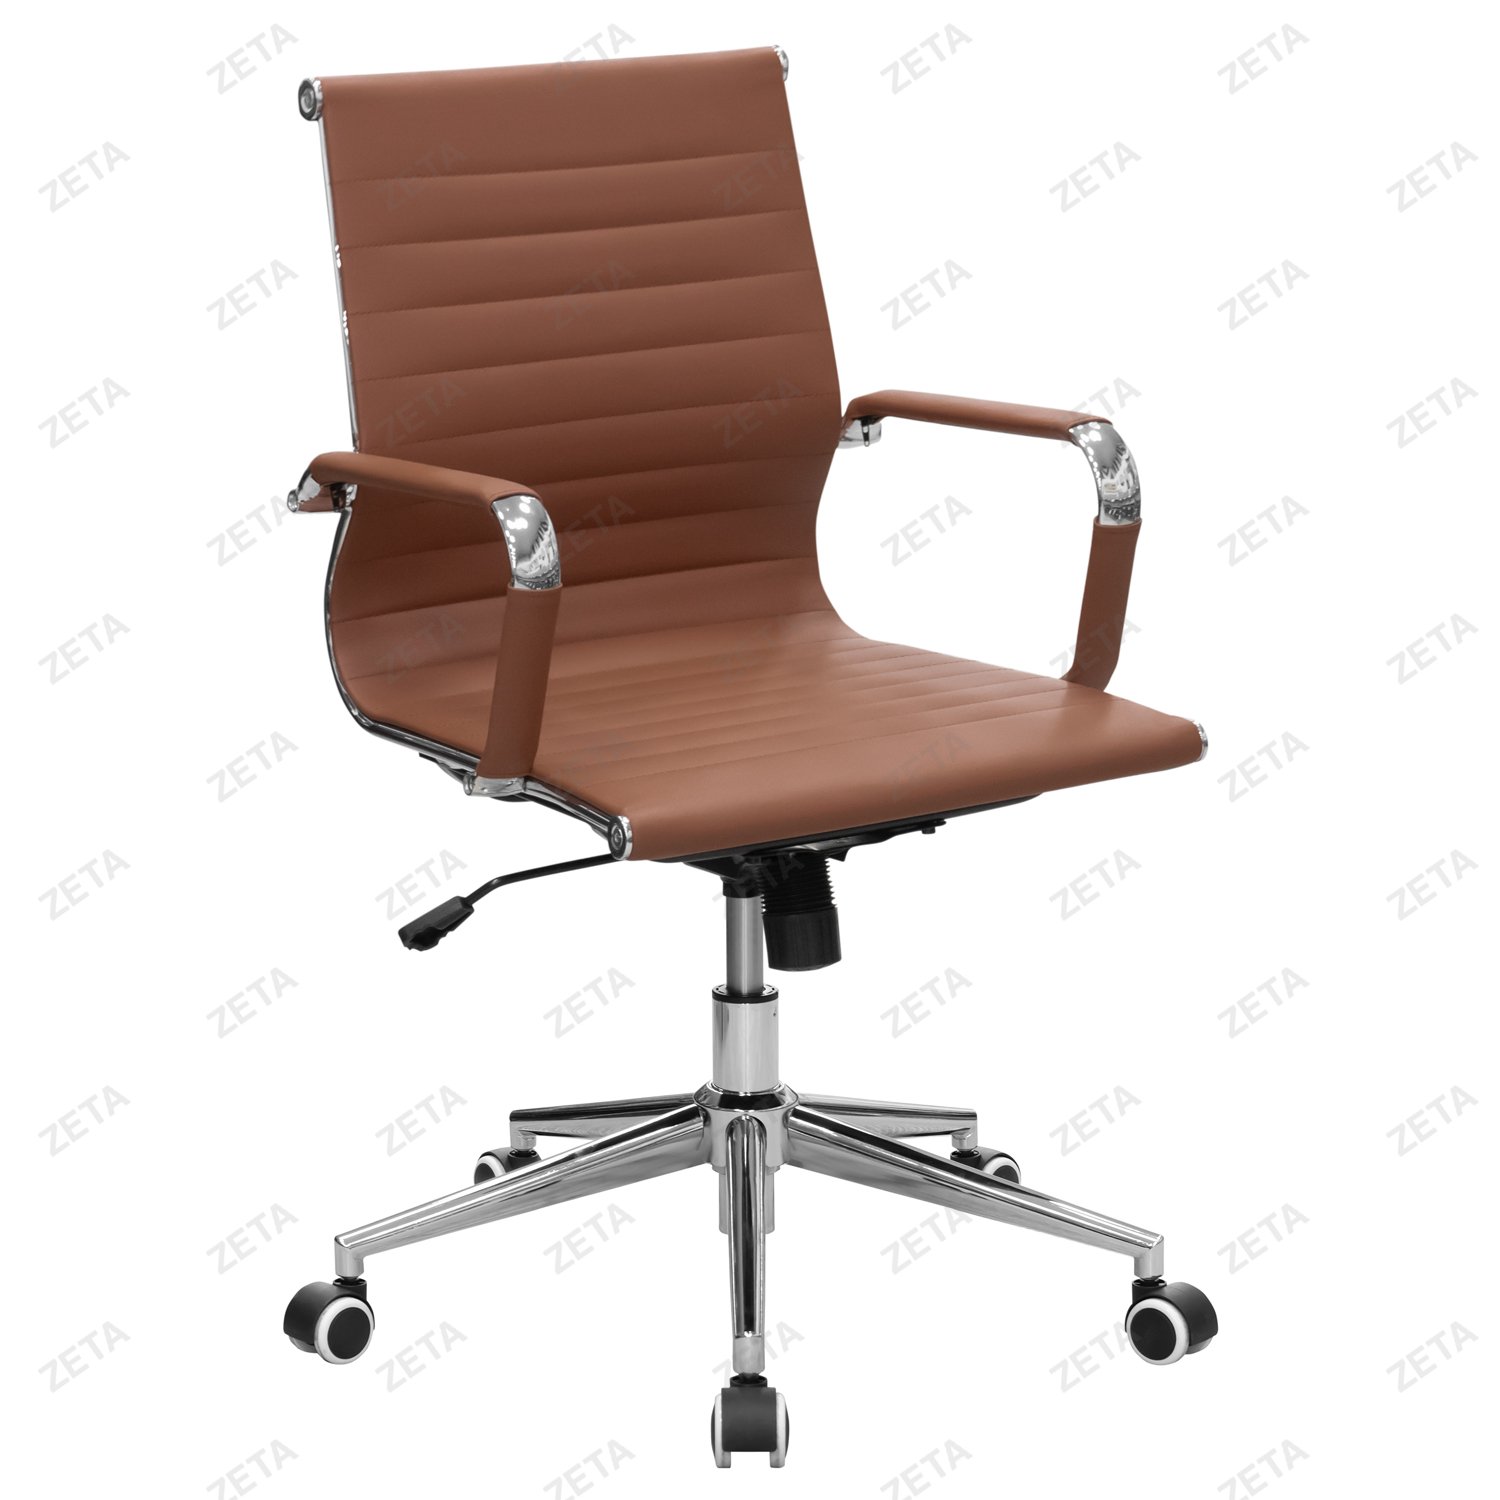 Кресло №5728-L (тёмно-коричневое) - изображение 1